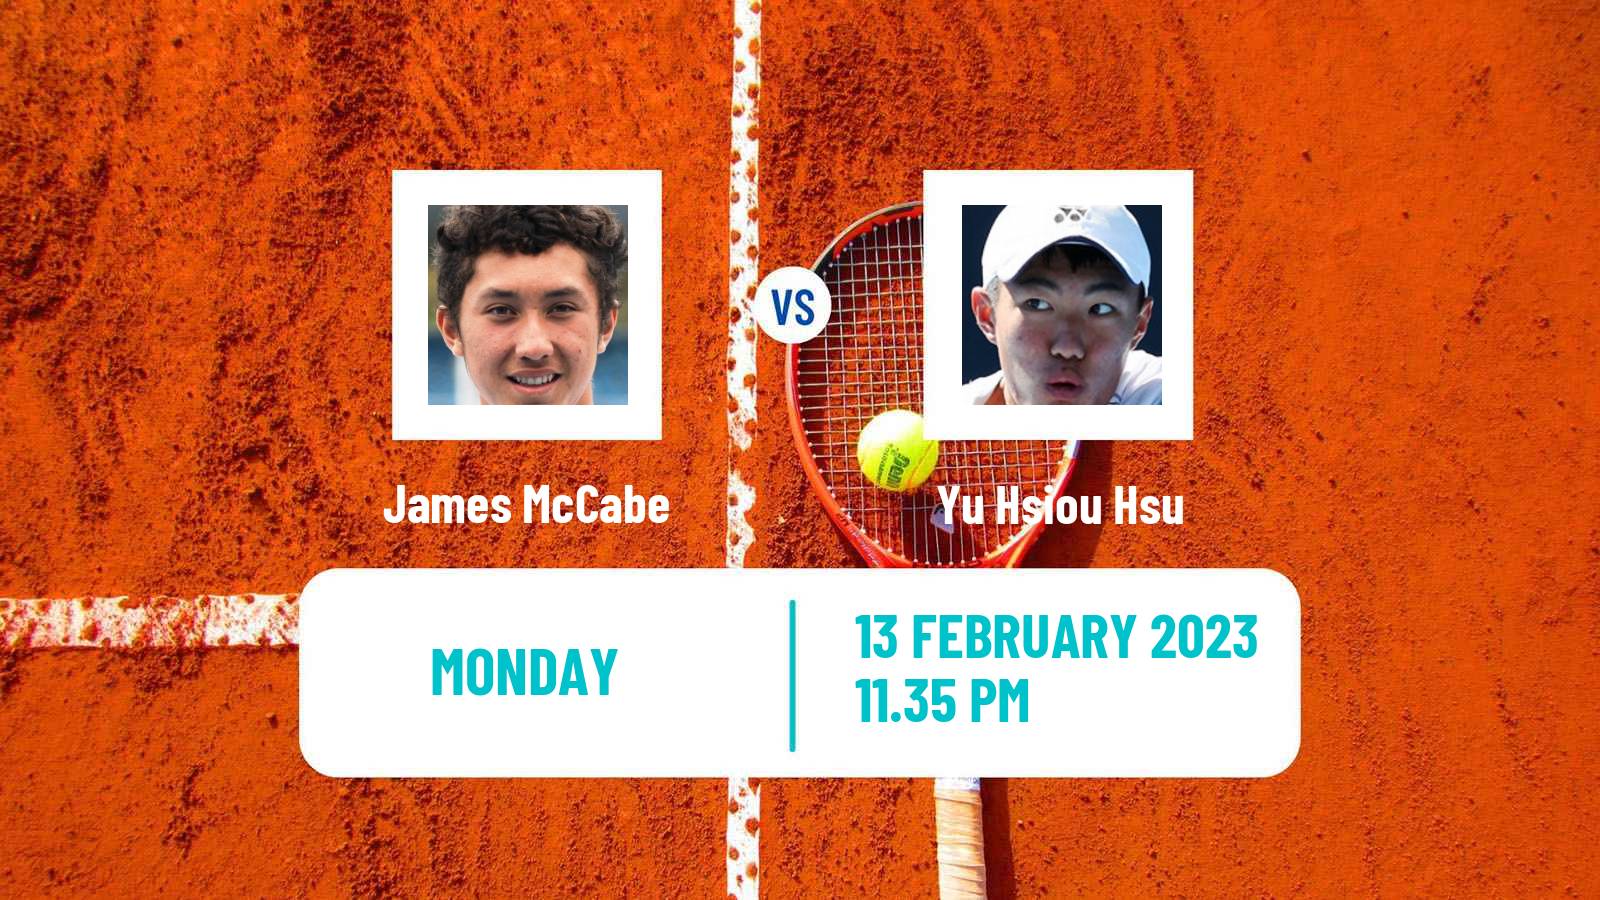 Tennis ATP Challenger James McCabe - Yu Hsiou Hsu